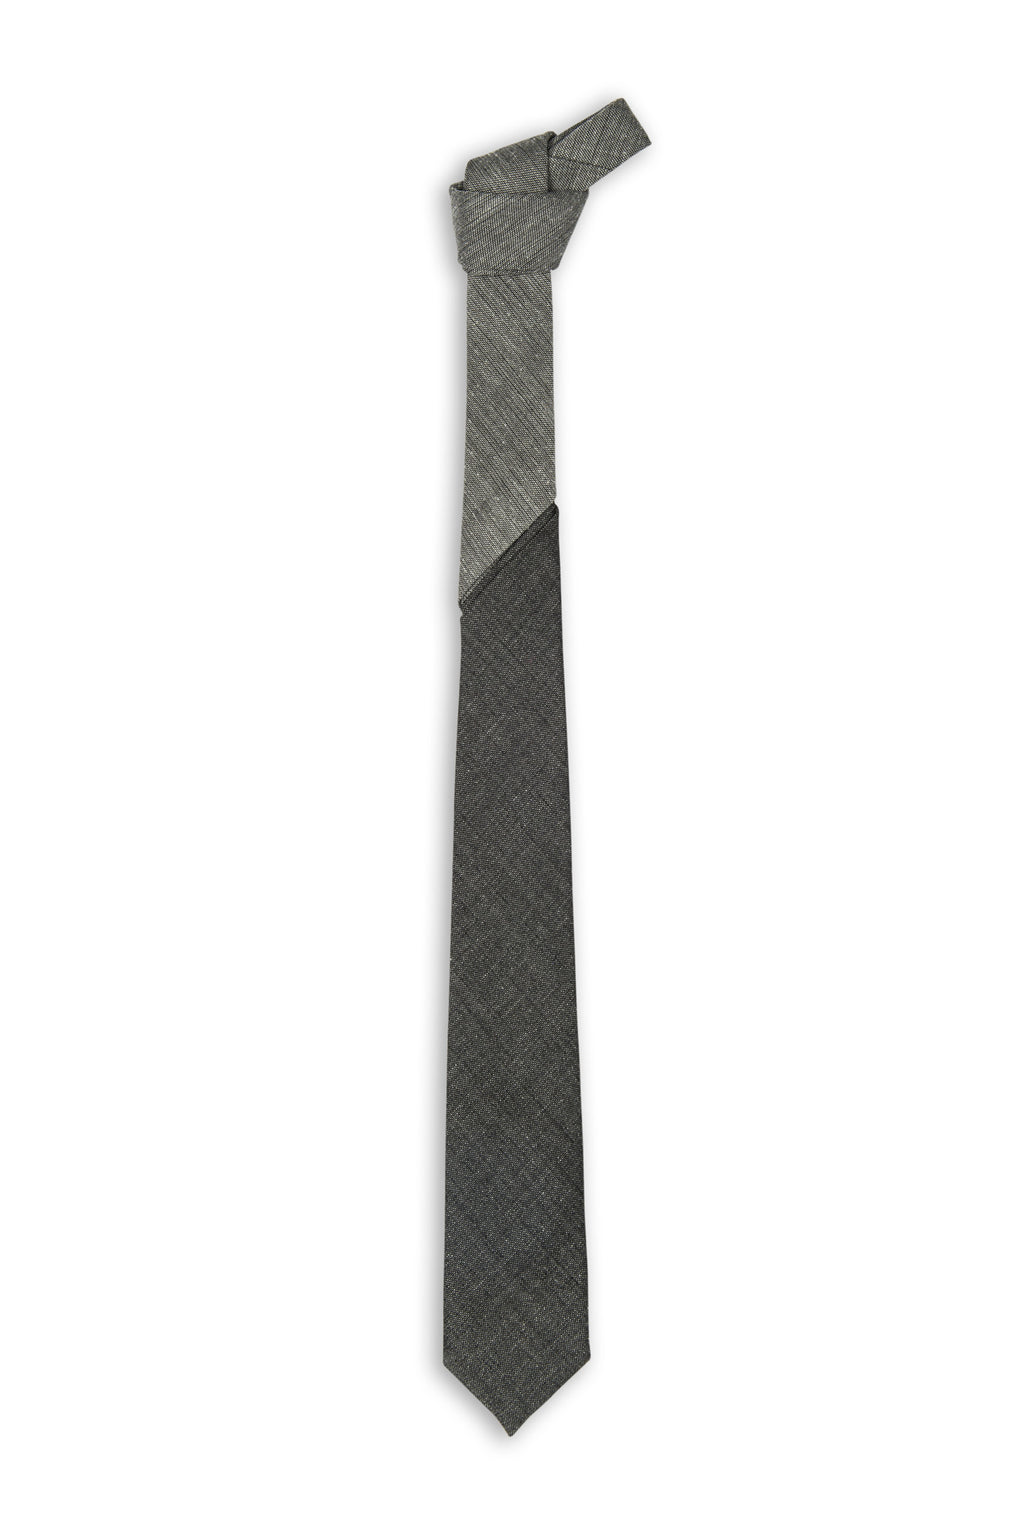 Cravate laine en deux tons avec séparation distincte - Two tone wool grey tie with gap in between